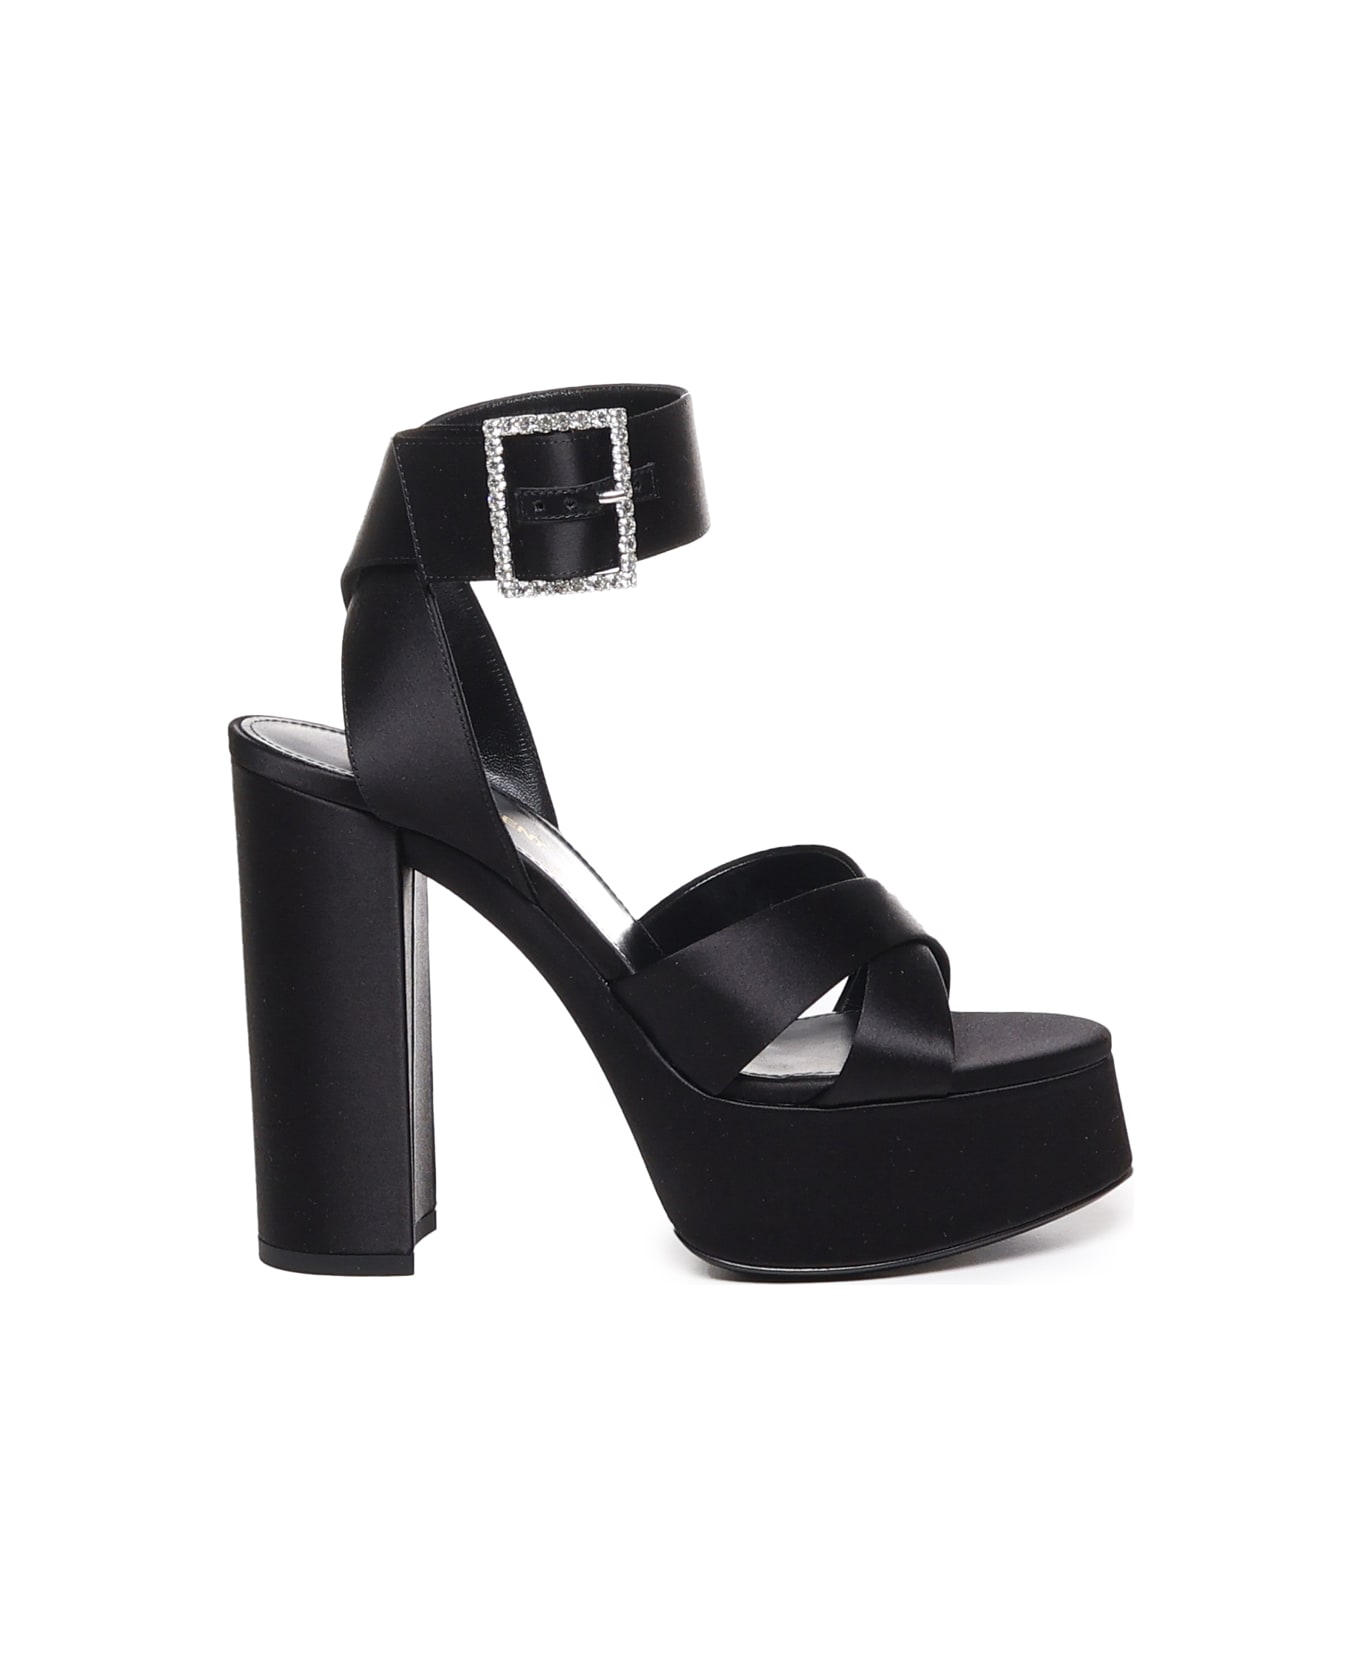 Saint Laurent Bianca Sandals With Platform - Black